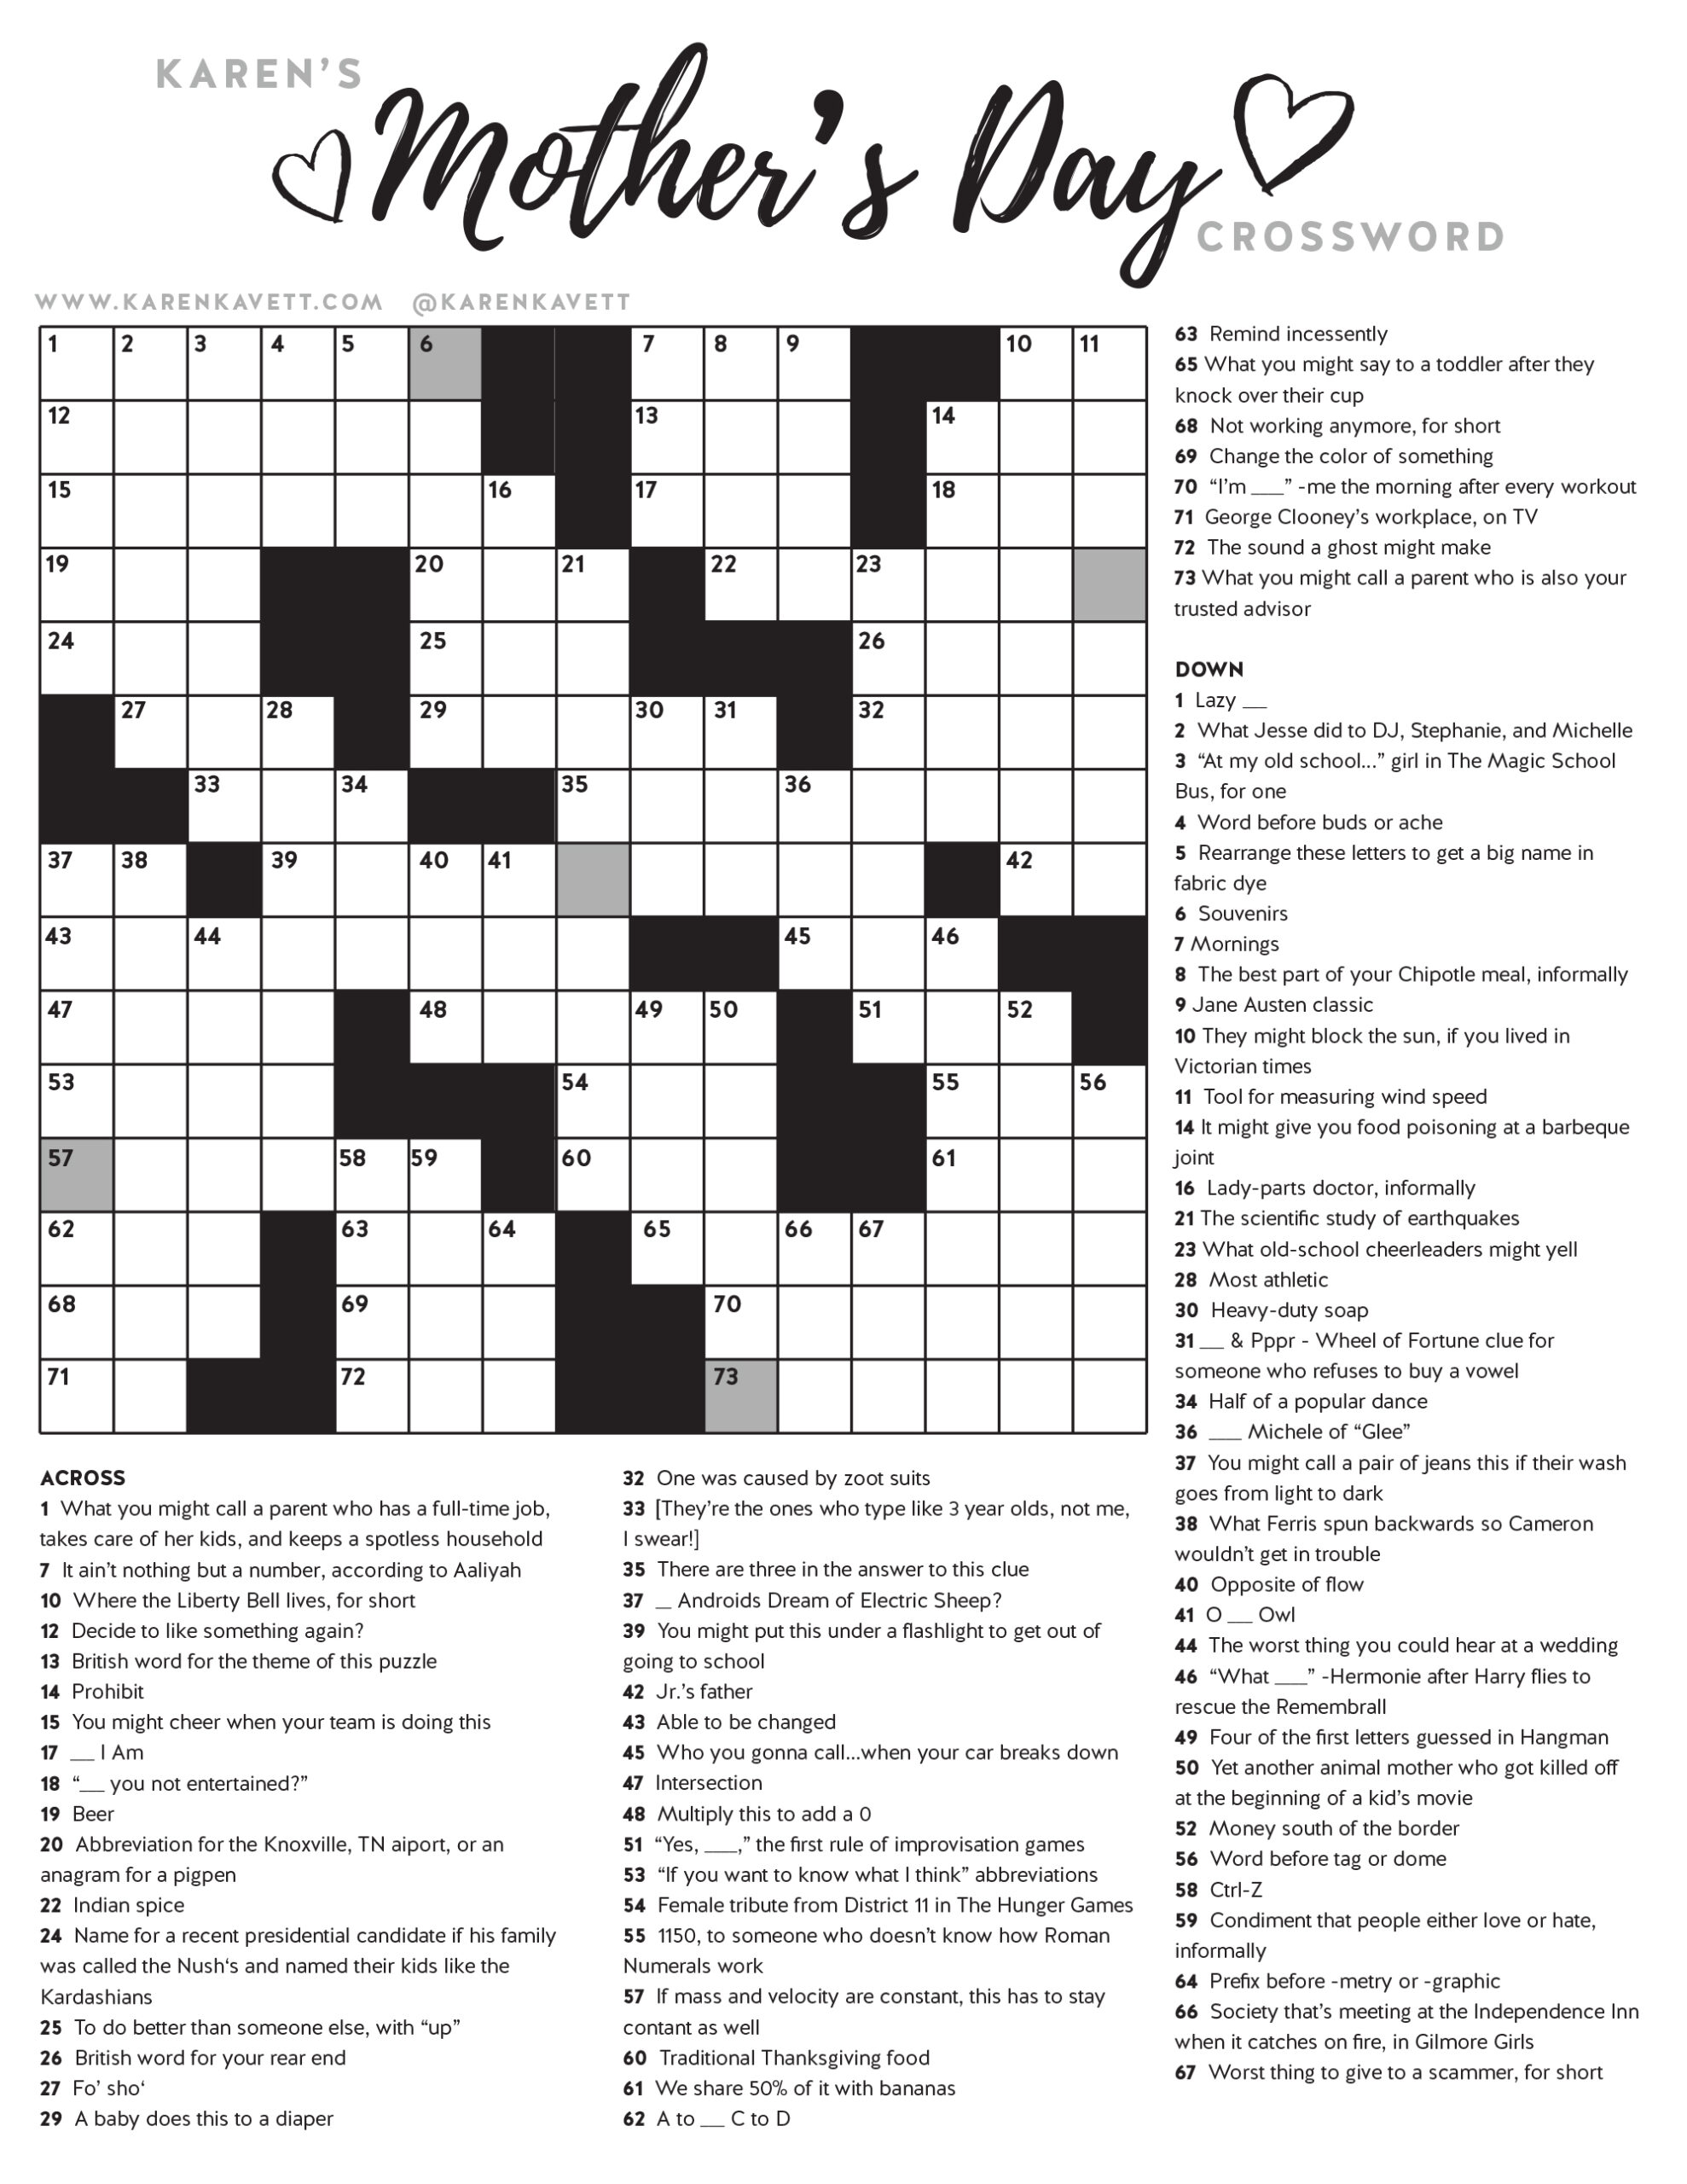 happy-mother-s-day-crossword-puzzle-karen-kavett